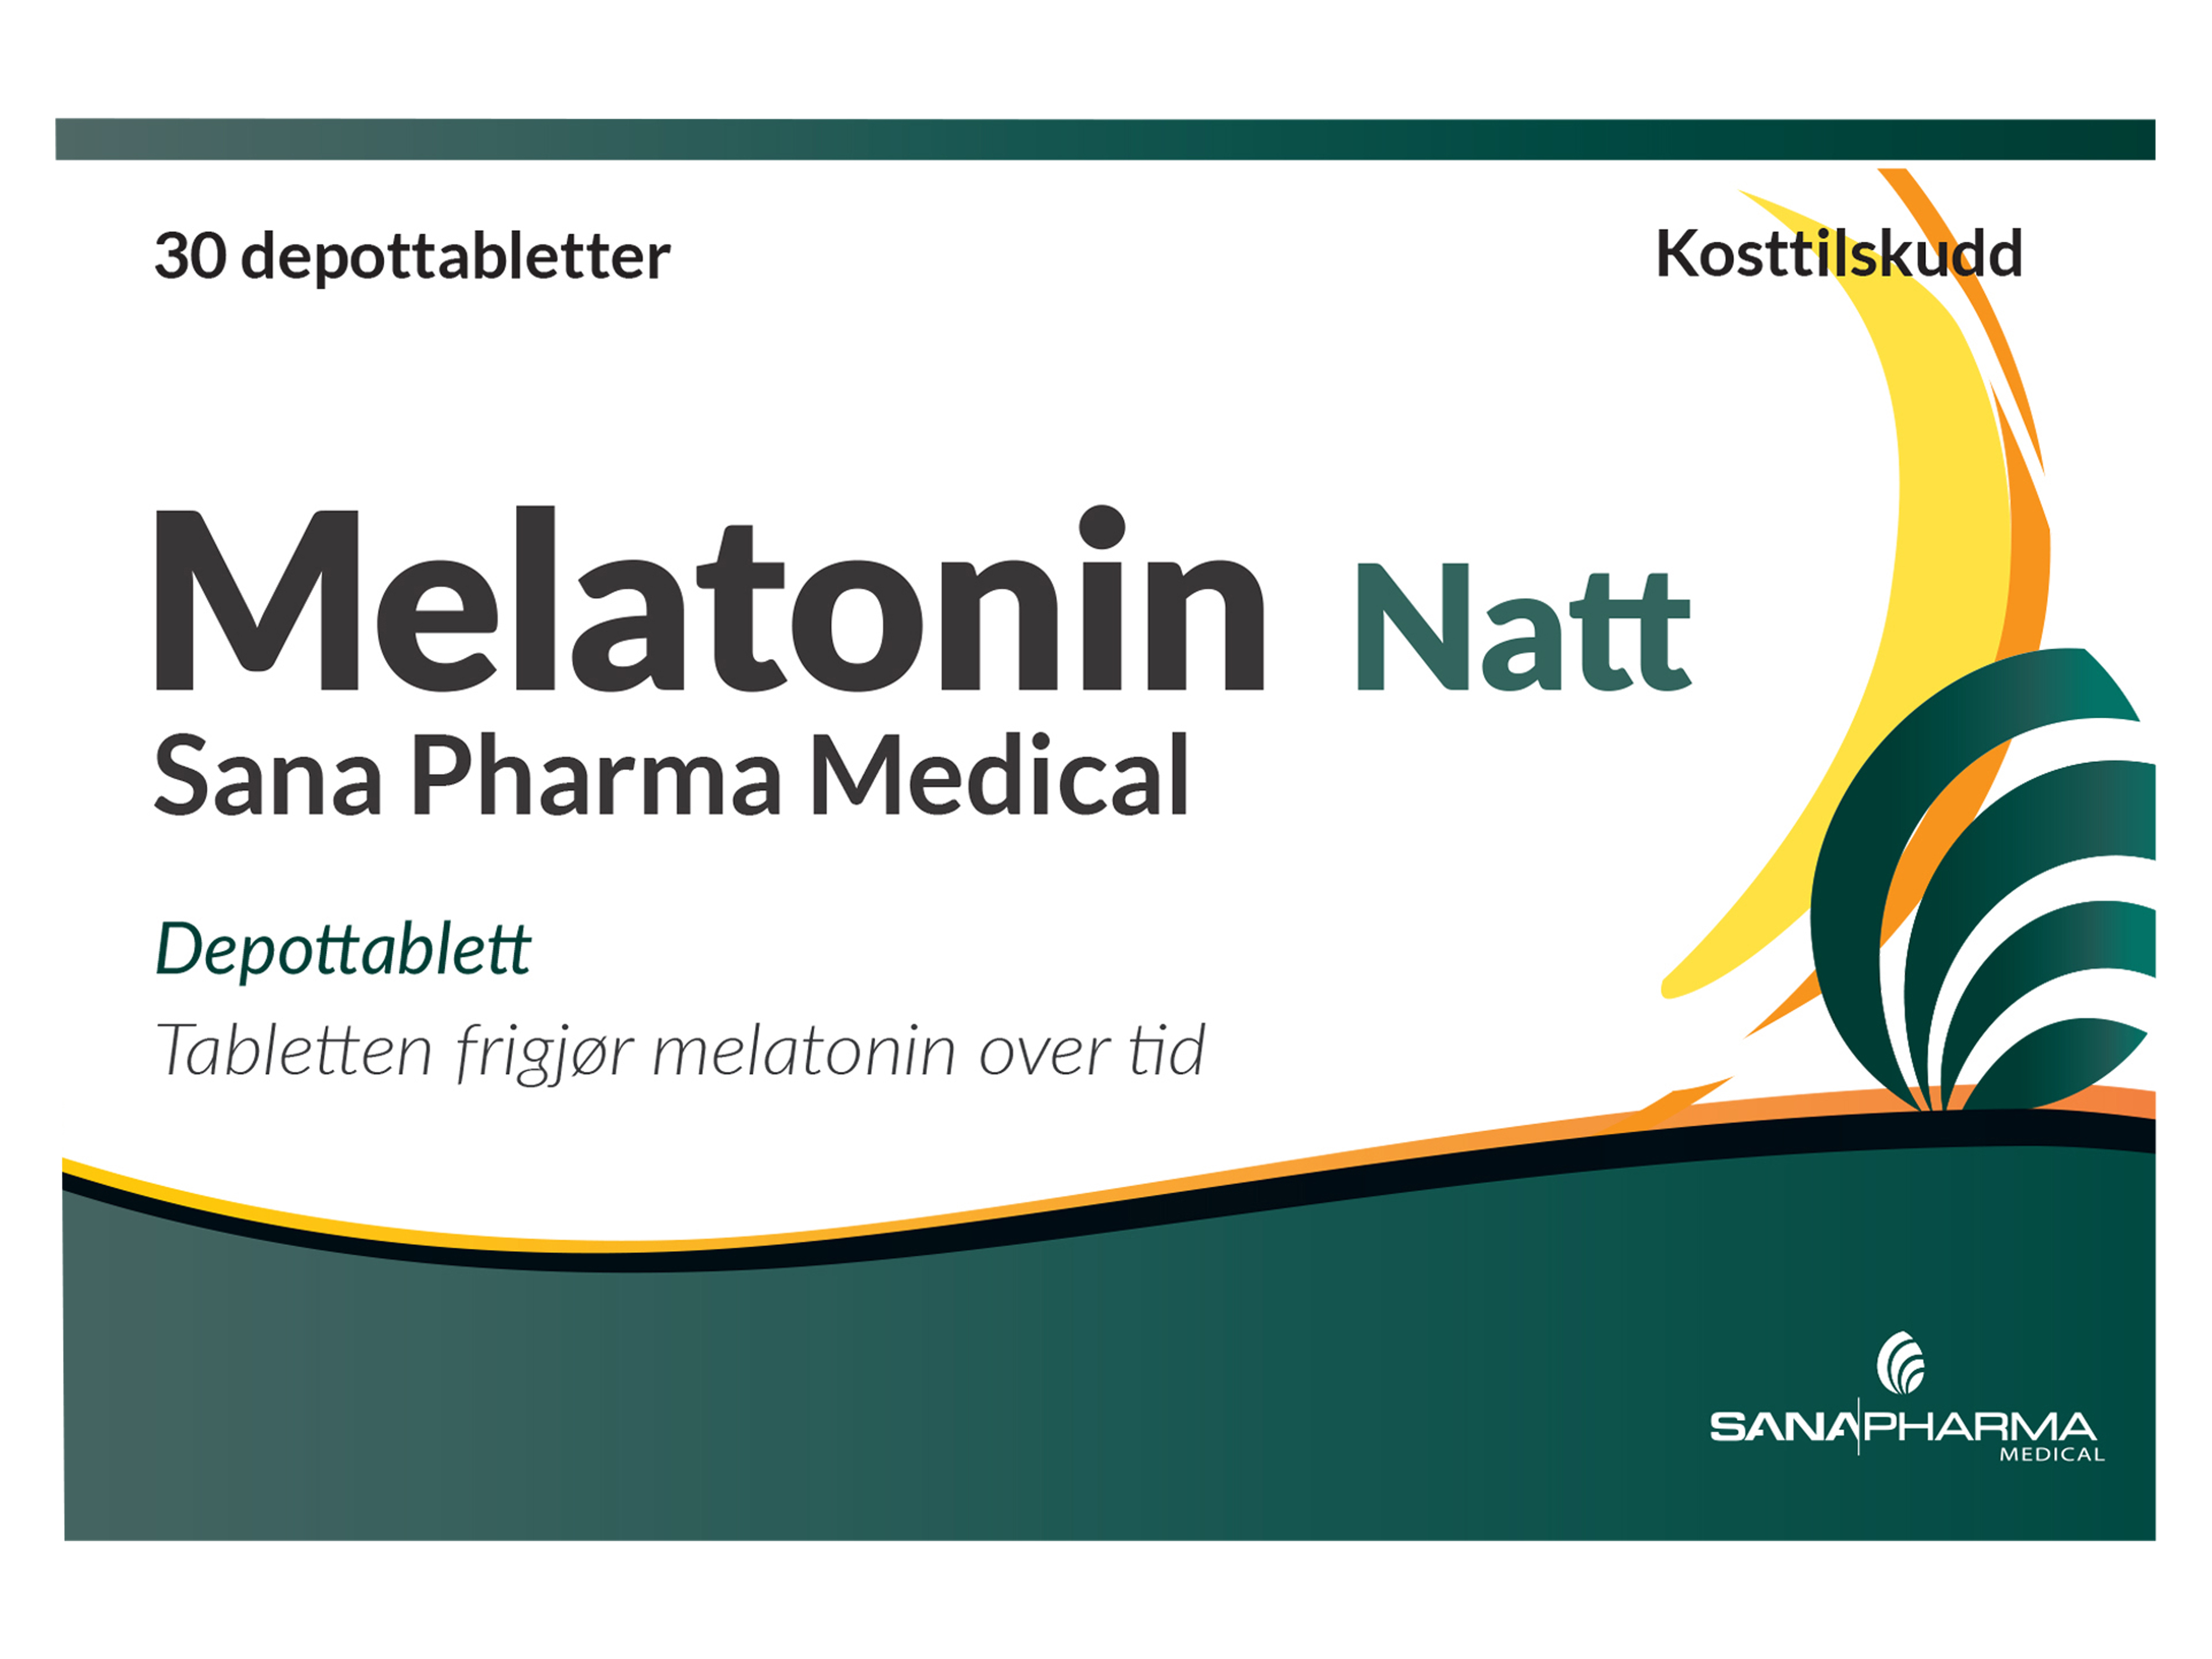 Sana Pharma Melatonin Natt Depottablett 1 mg, 30 tabletter